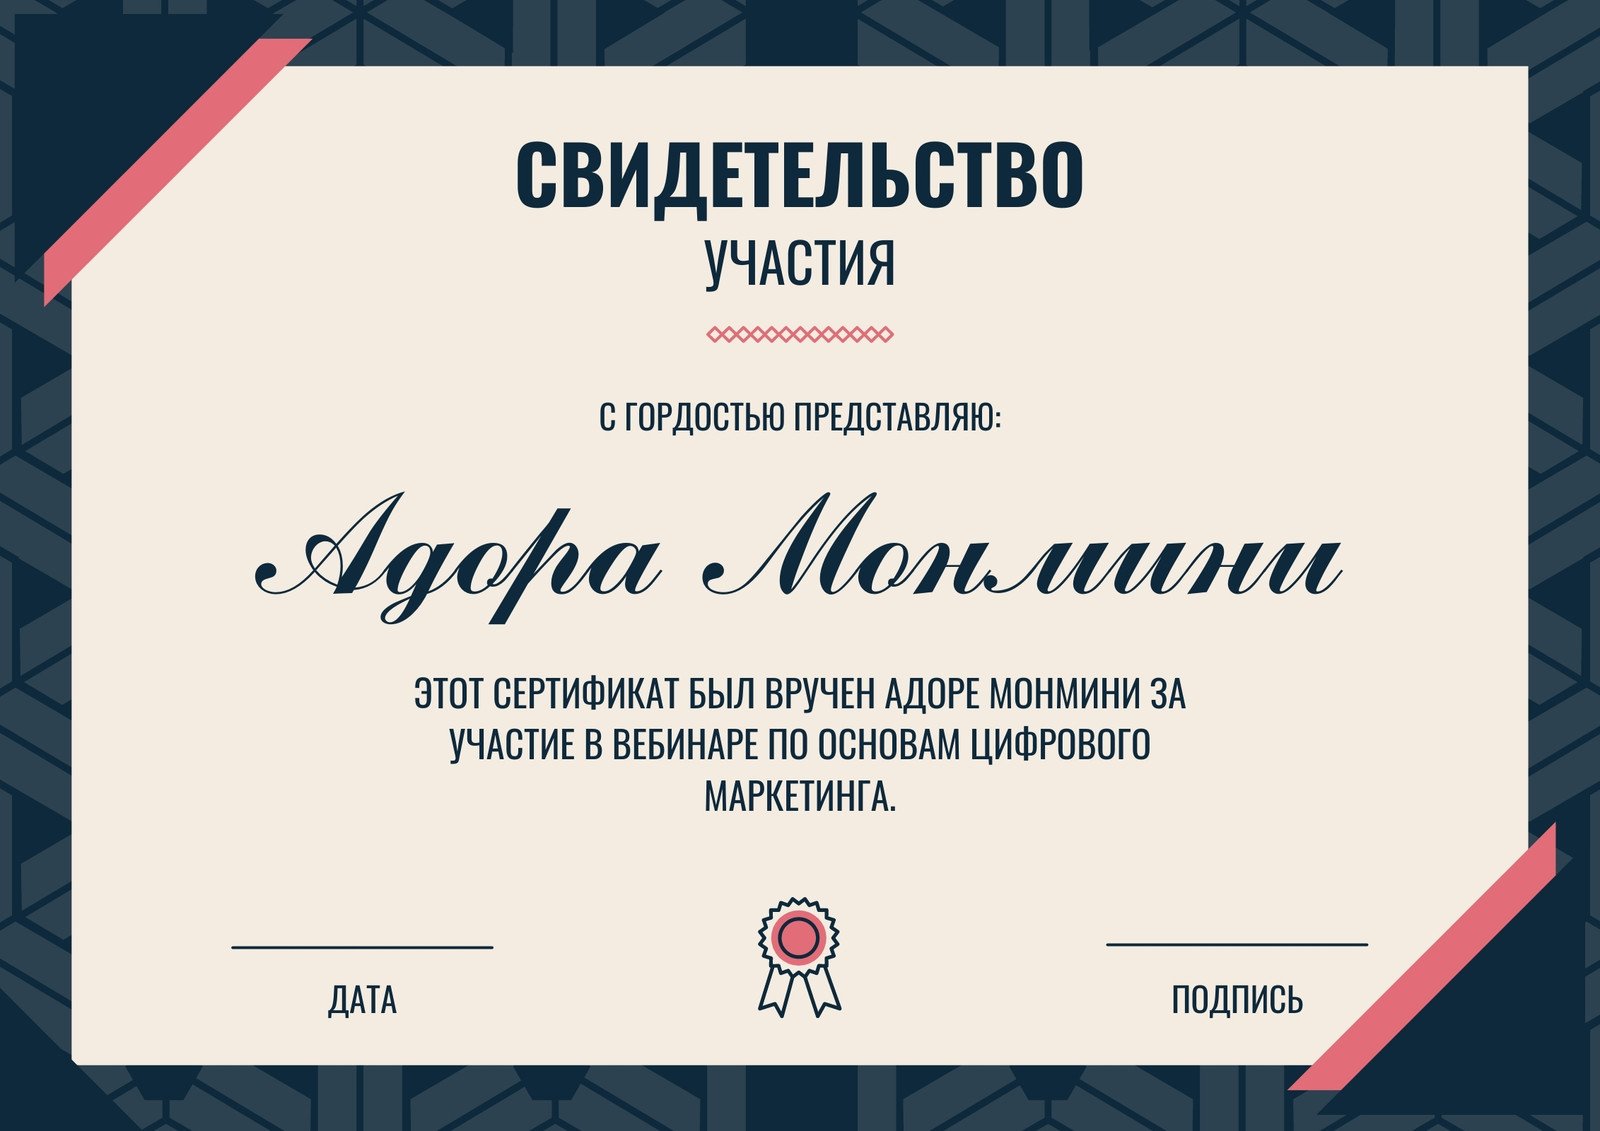 ПедагогиУм — Образцы документов, выдаваемых за участие в детском конкурсе чтецов